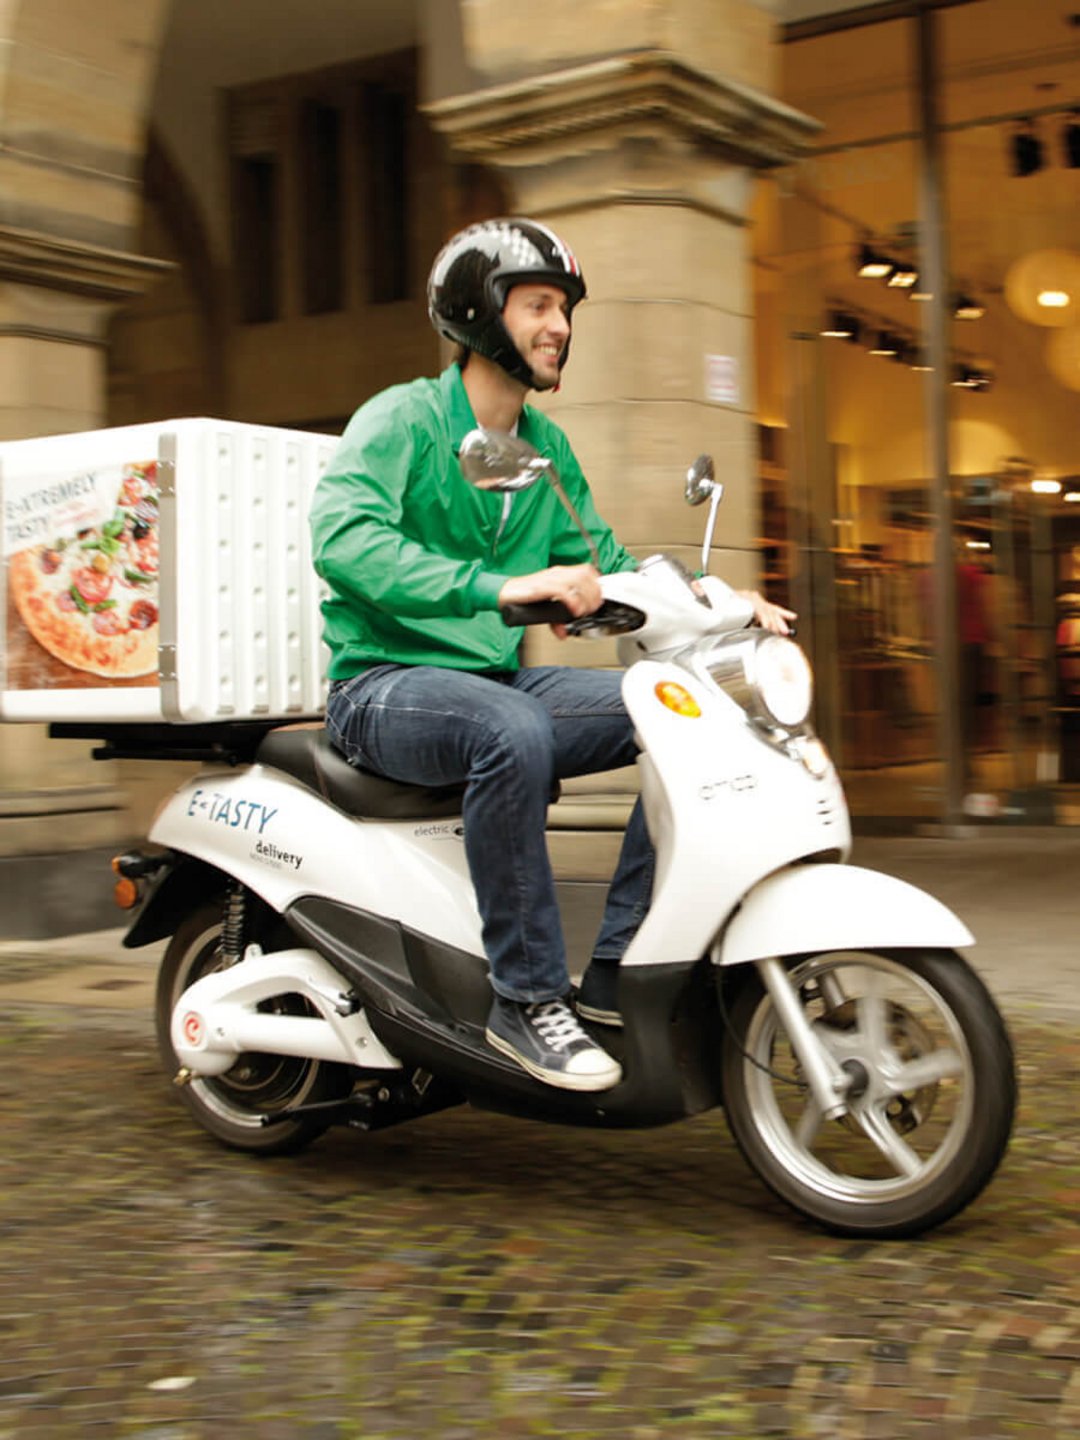 Scooter barato para la entrega de pizza en la ciudad.